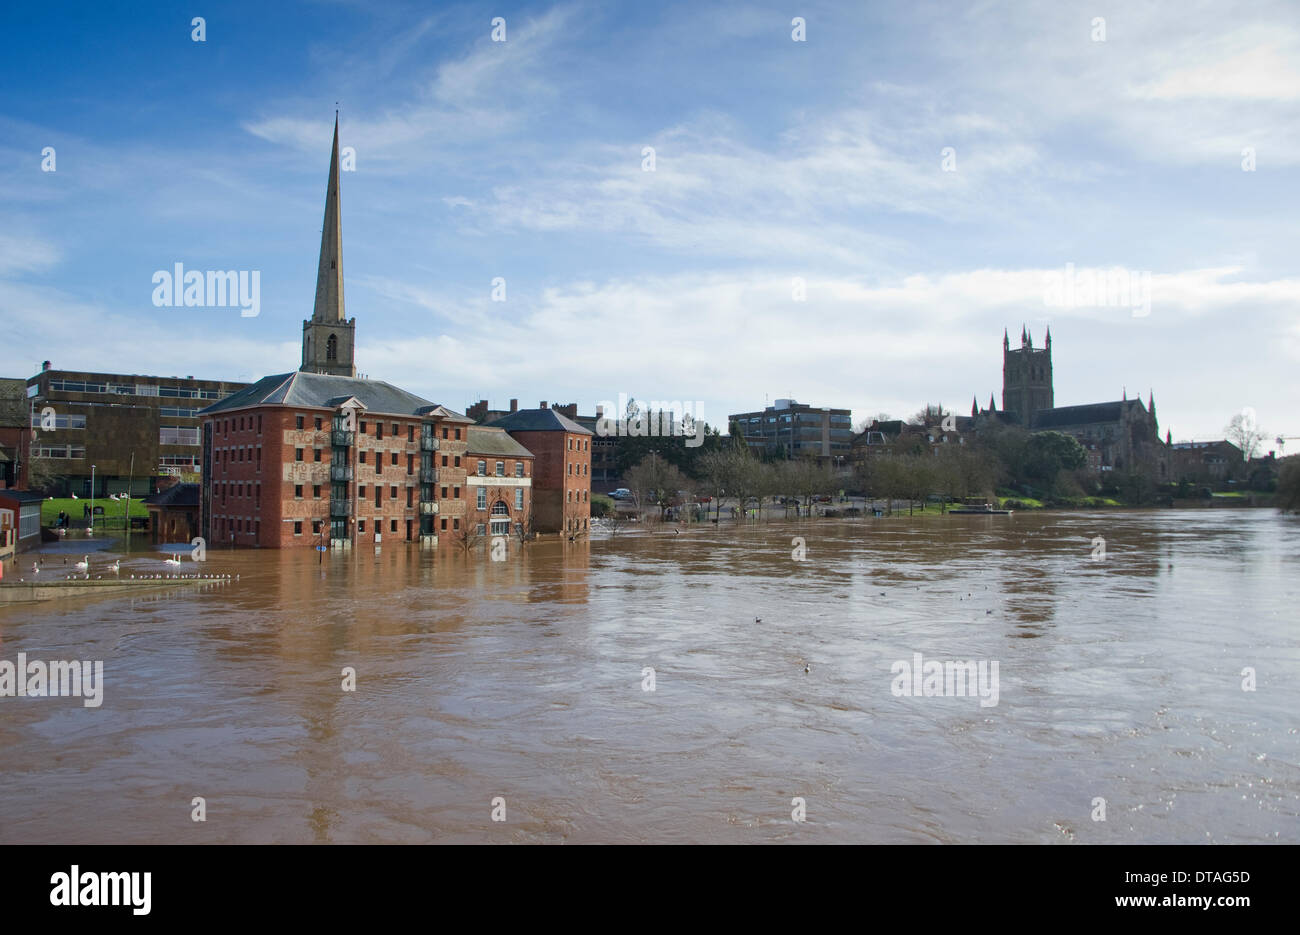 Worcester, Royaume-Uni. Feb 13, 2014. La rivière Severn à Worcester a dépassé les niveaux d'inondation record de 2007 atteindre 5.67m (18ft 7in) le 13 février 2014. Le centre ville principal pont-route a été fermée à la circulation pendant plusieurs jours, par mesure de précaution, avec une navette de bus en fonctionnement. La Cathédrale de Worcester est témoin de la poursuite de l'un des hivers les plus humides du Royaume-Uni jamais enregistré. Les prévisionnistes prévoient plus humide et venteux à venir. Pithie Crédit : Fraser/Alamy Live News Banque D'Images